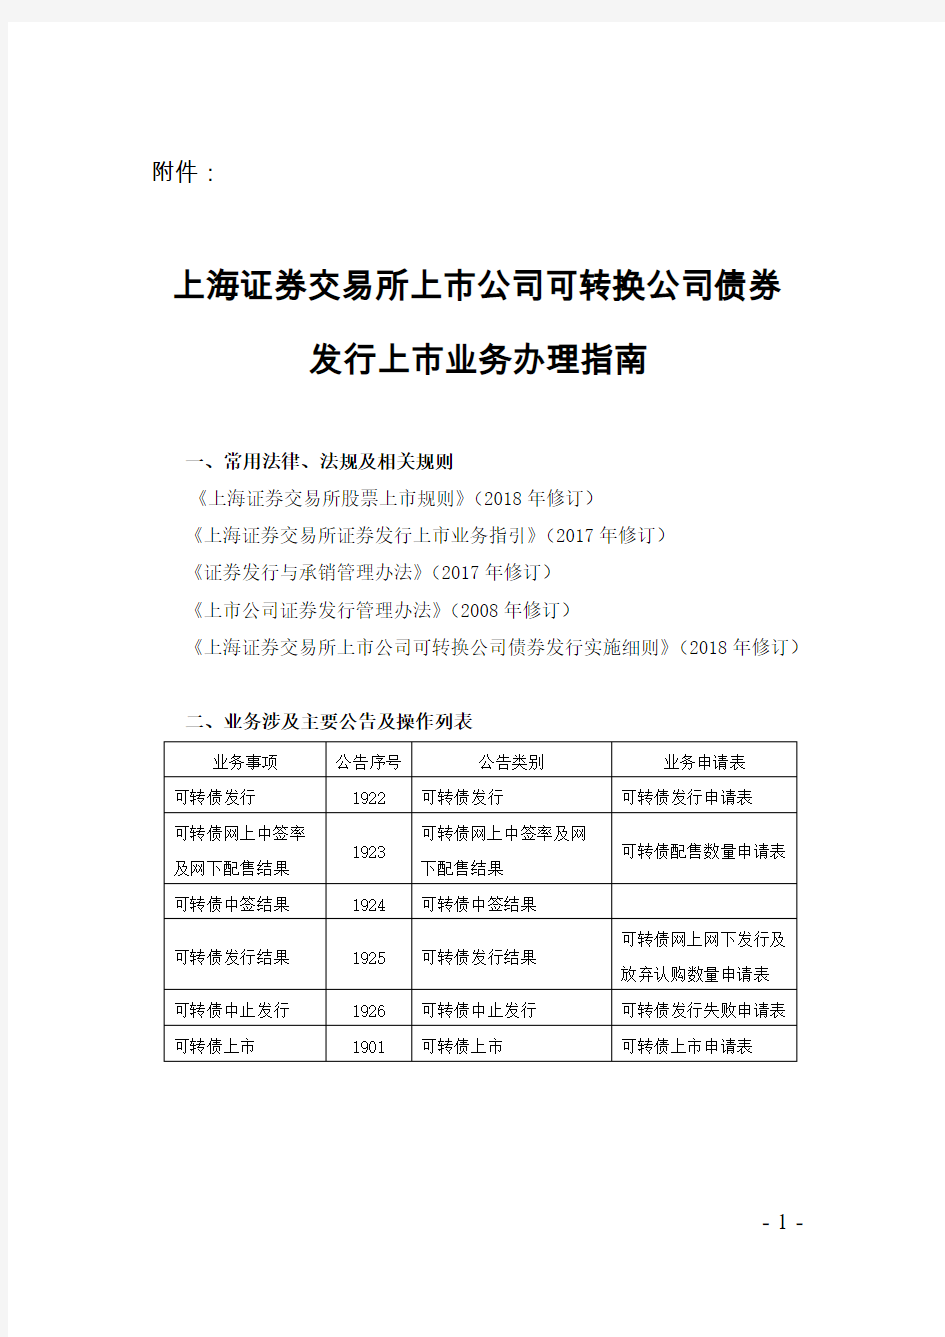 上海证券交易所上市公司可转换公司债券发行上市业务办理指南【2018年修订】(2018-12-28)